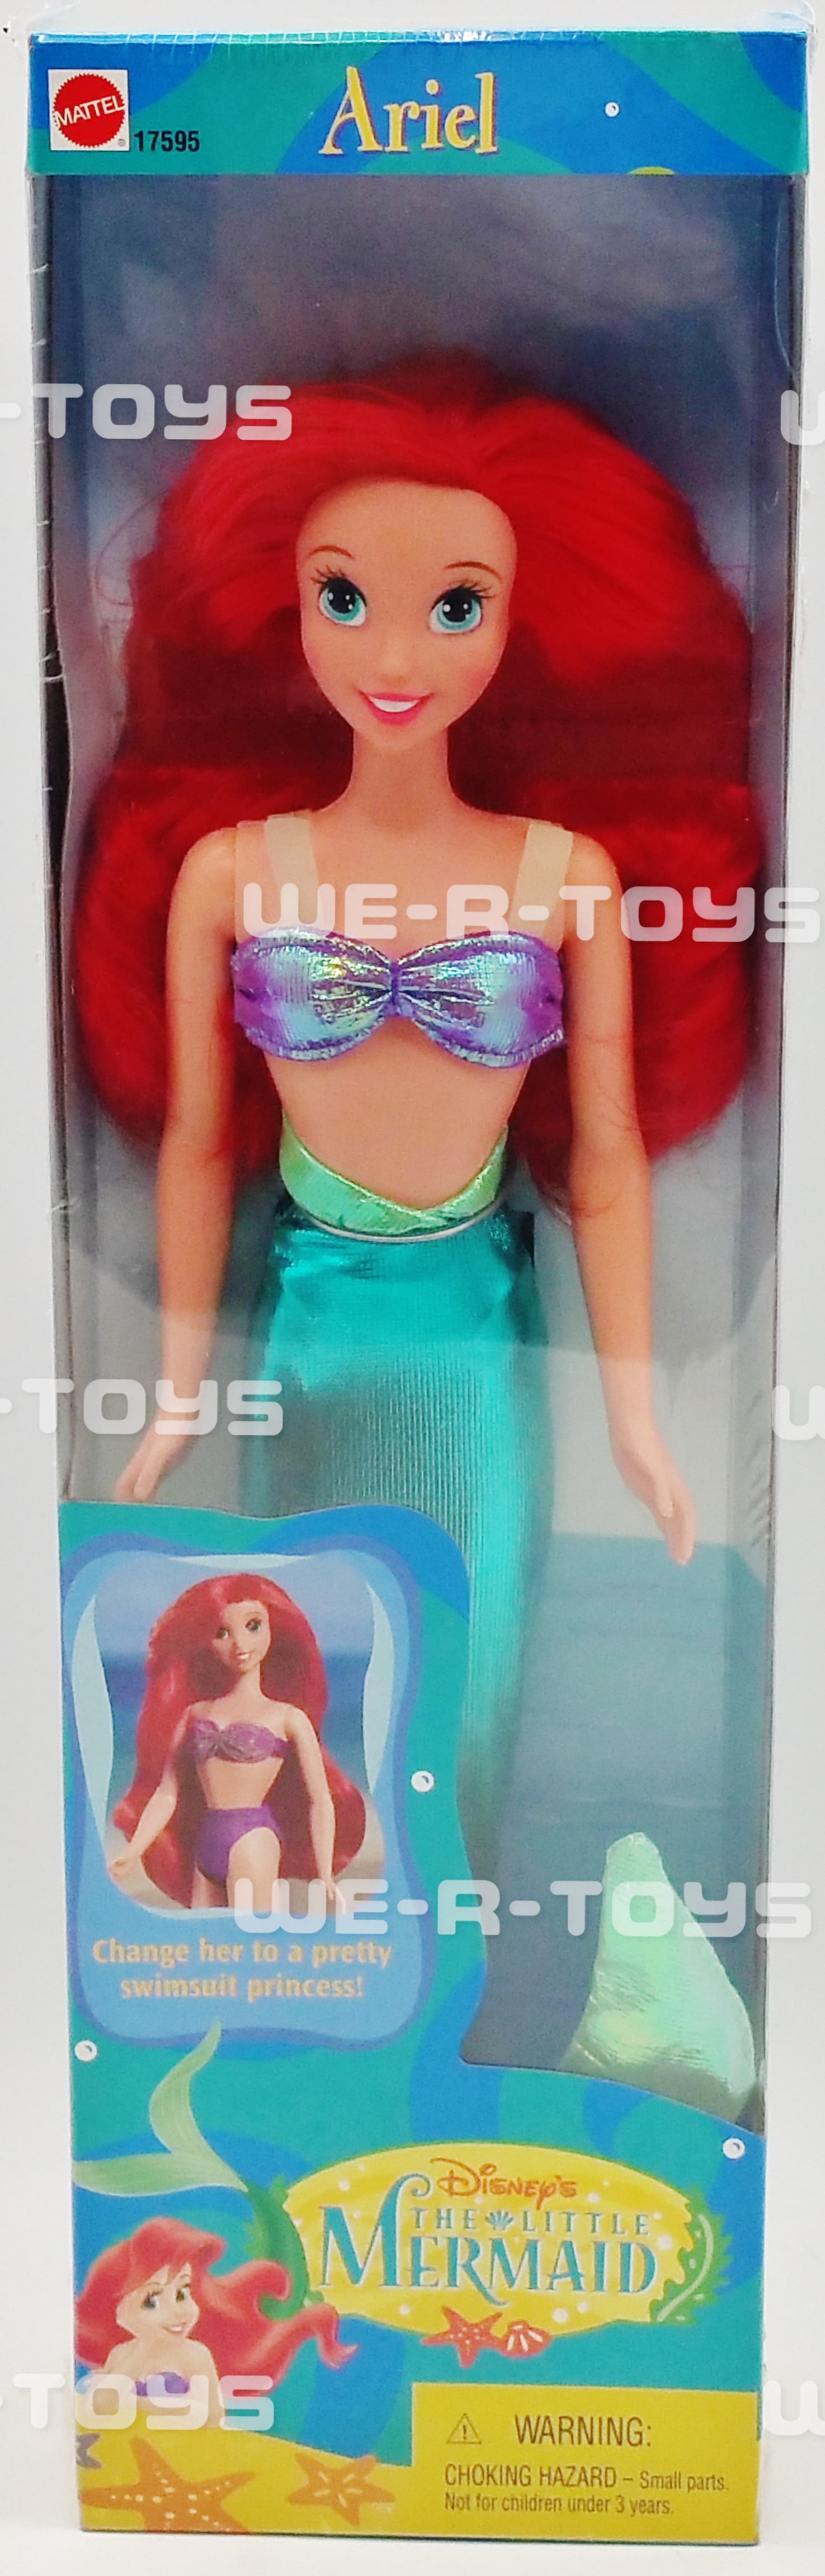 Disney's The Little Mermaid Ariel Doll 1997 Mattel 17595